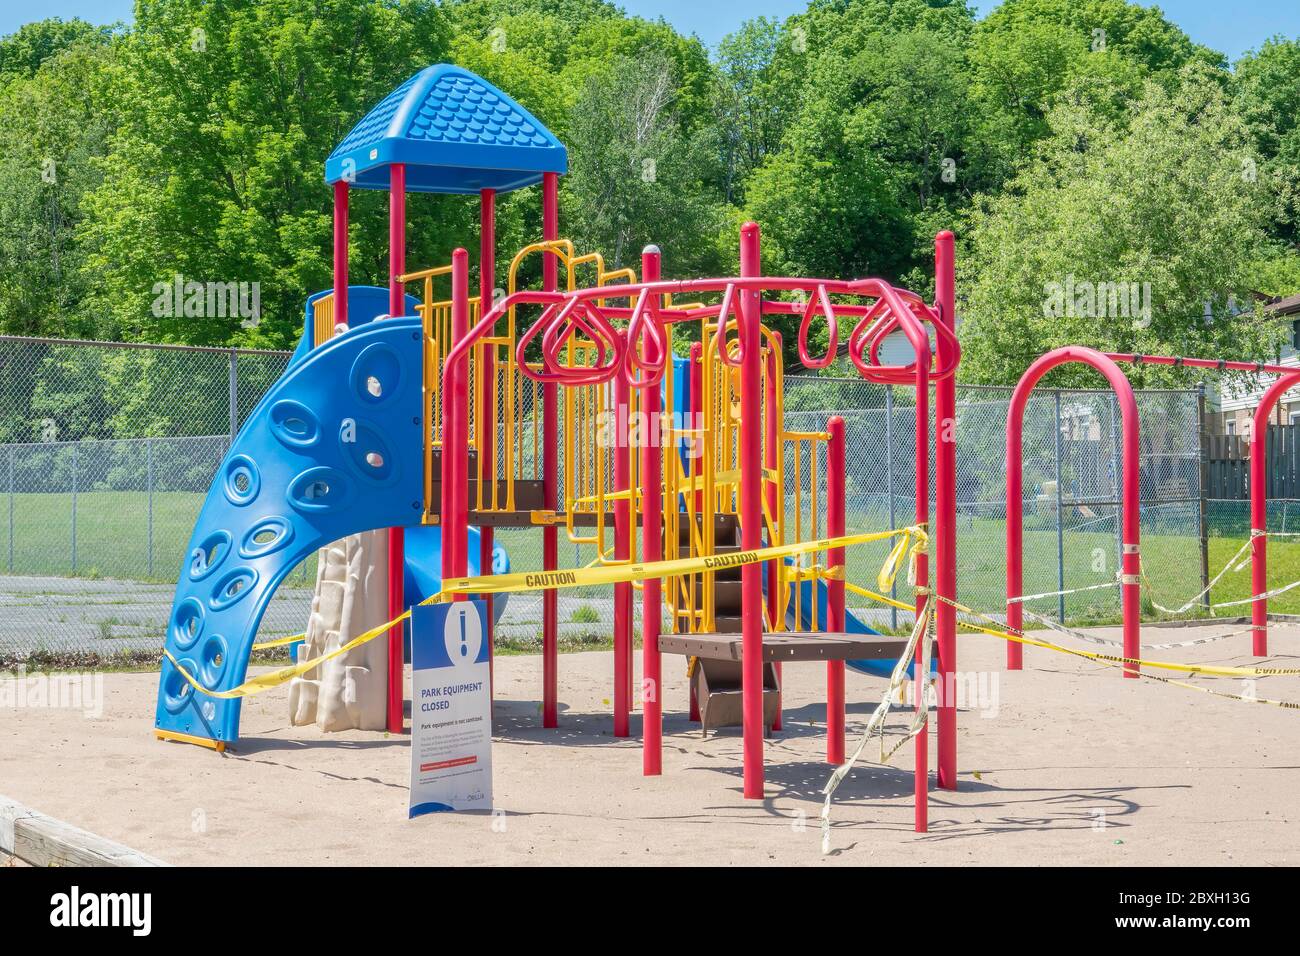 Parque infantil vacío cerrado para su uso debido a preocupaciones de seguridad sobre covid-19 en Orillia Ontario Canadá. Foto de stock